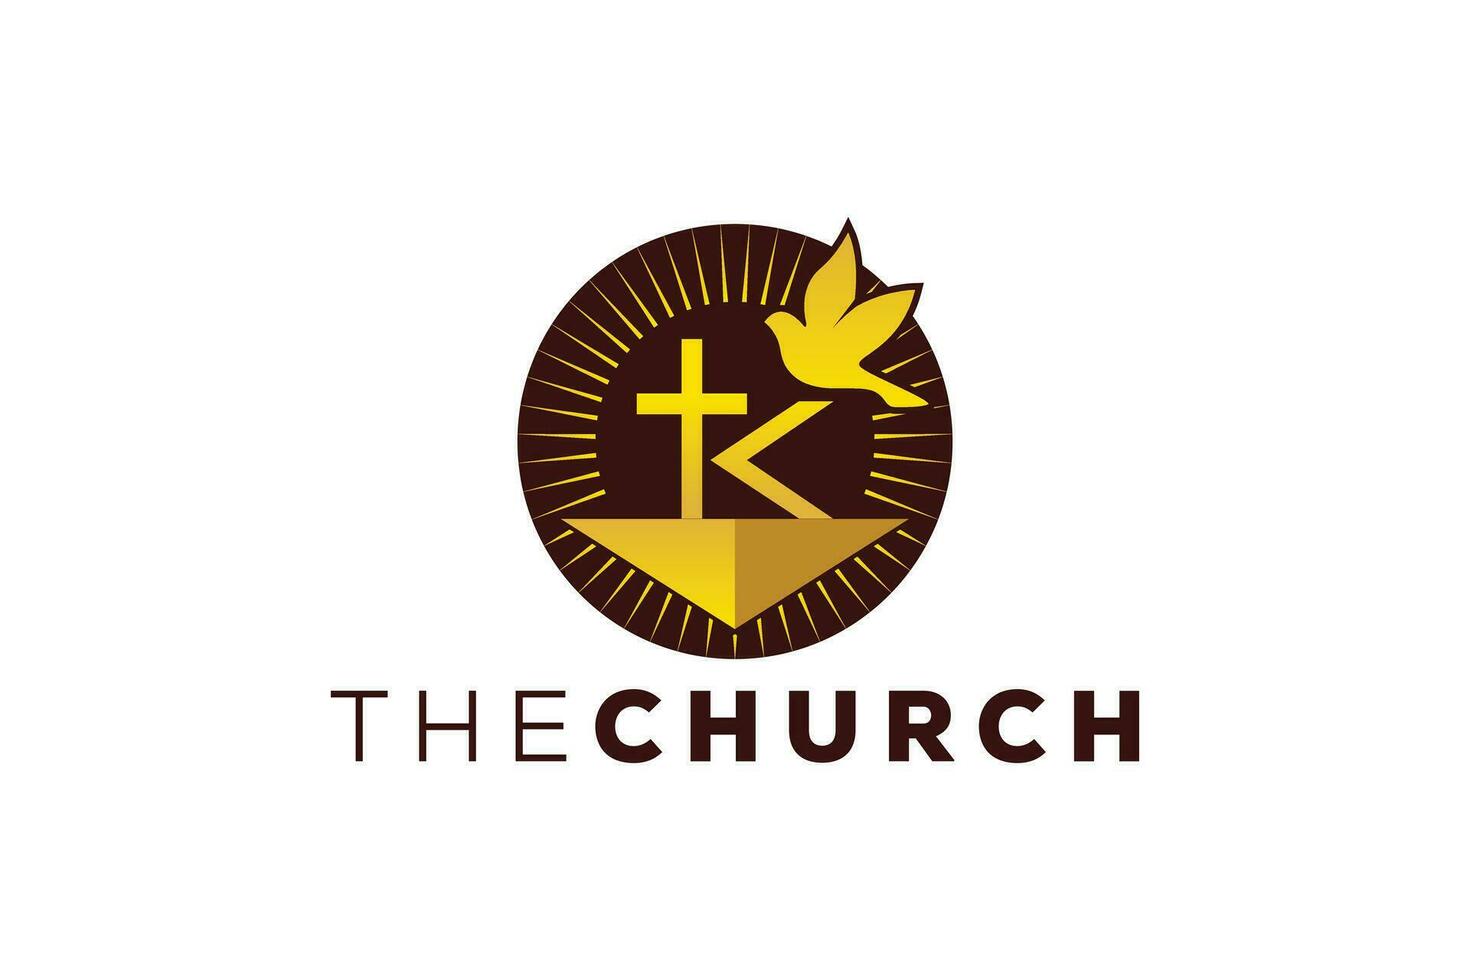 di moda e professionale lettera K Chiesa cartello cristiano e tranquillo, calmo vettore logo